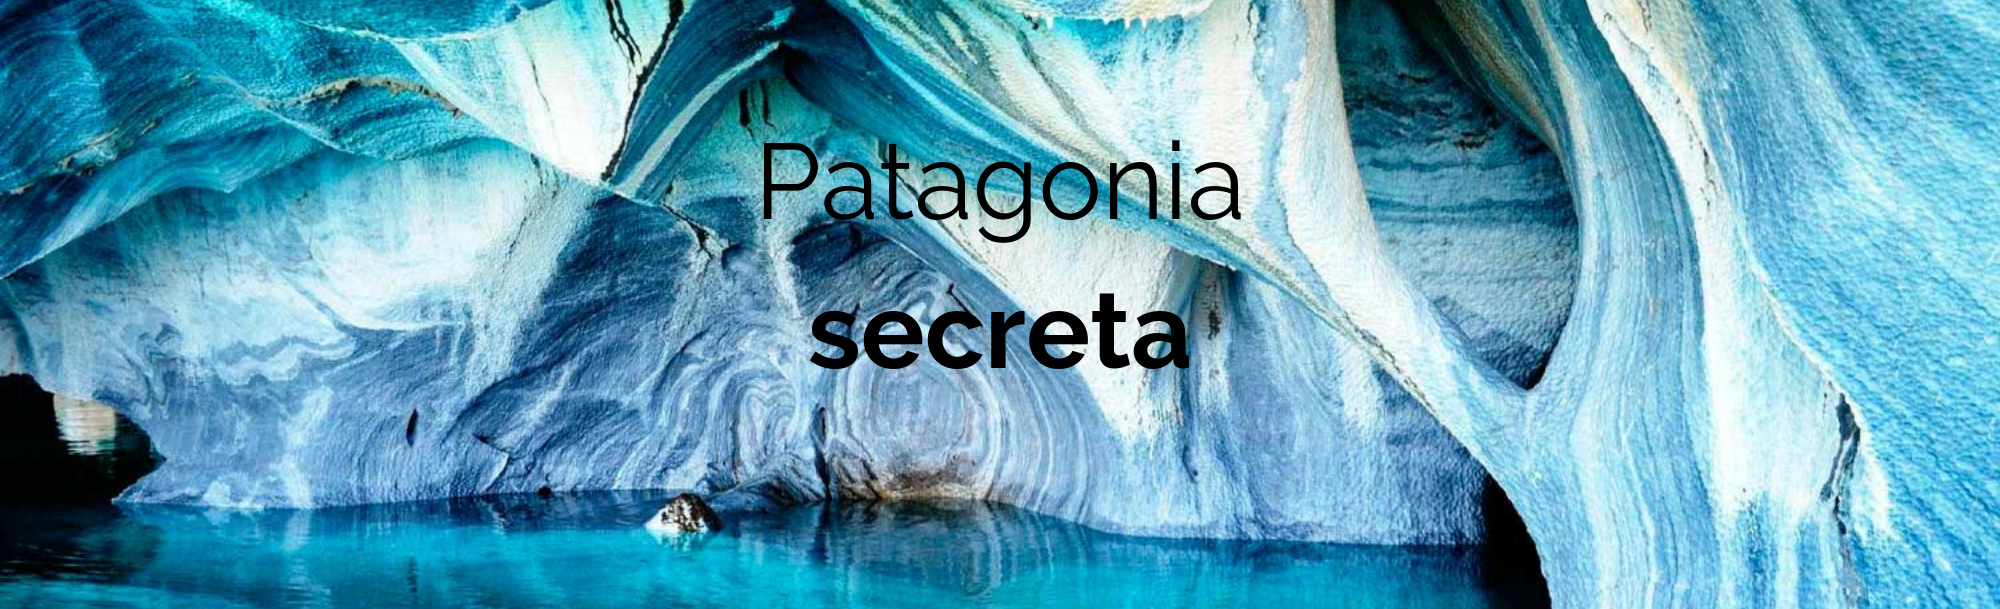 Patagonia secreta